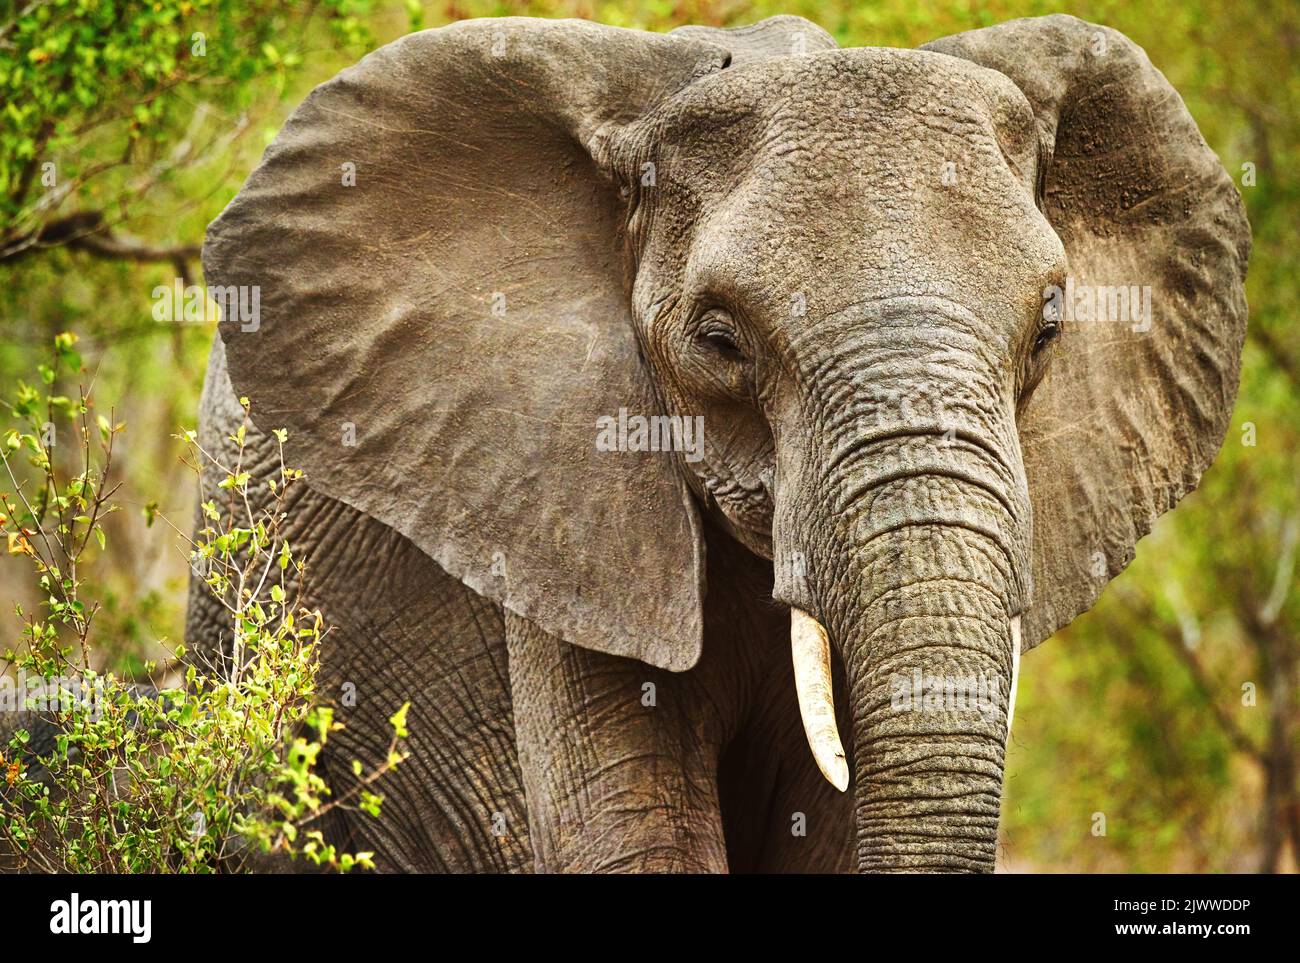 Roaming libero. Un elefante nel suo habitat naturale. Foto Stock